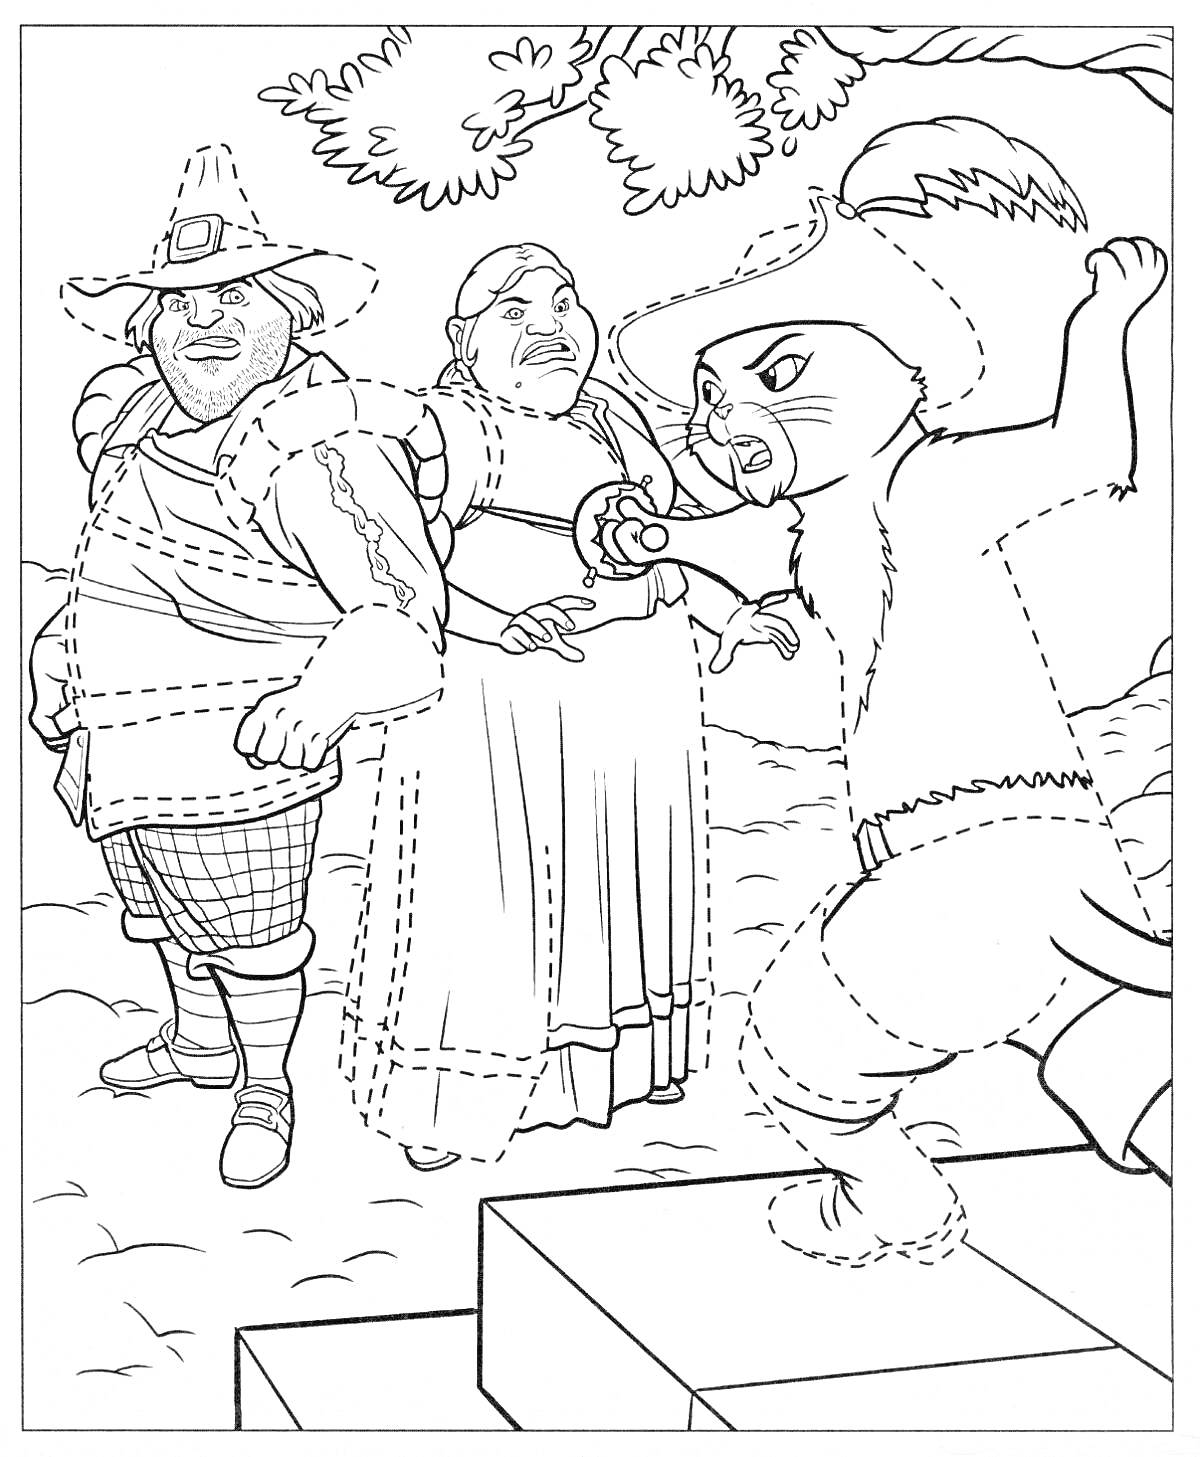 Раскраска Кот в сапогах, стоящий на ступеньках, с усатым мужчиной в шляпе и женщиной в платье на заднем плане.